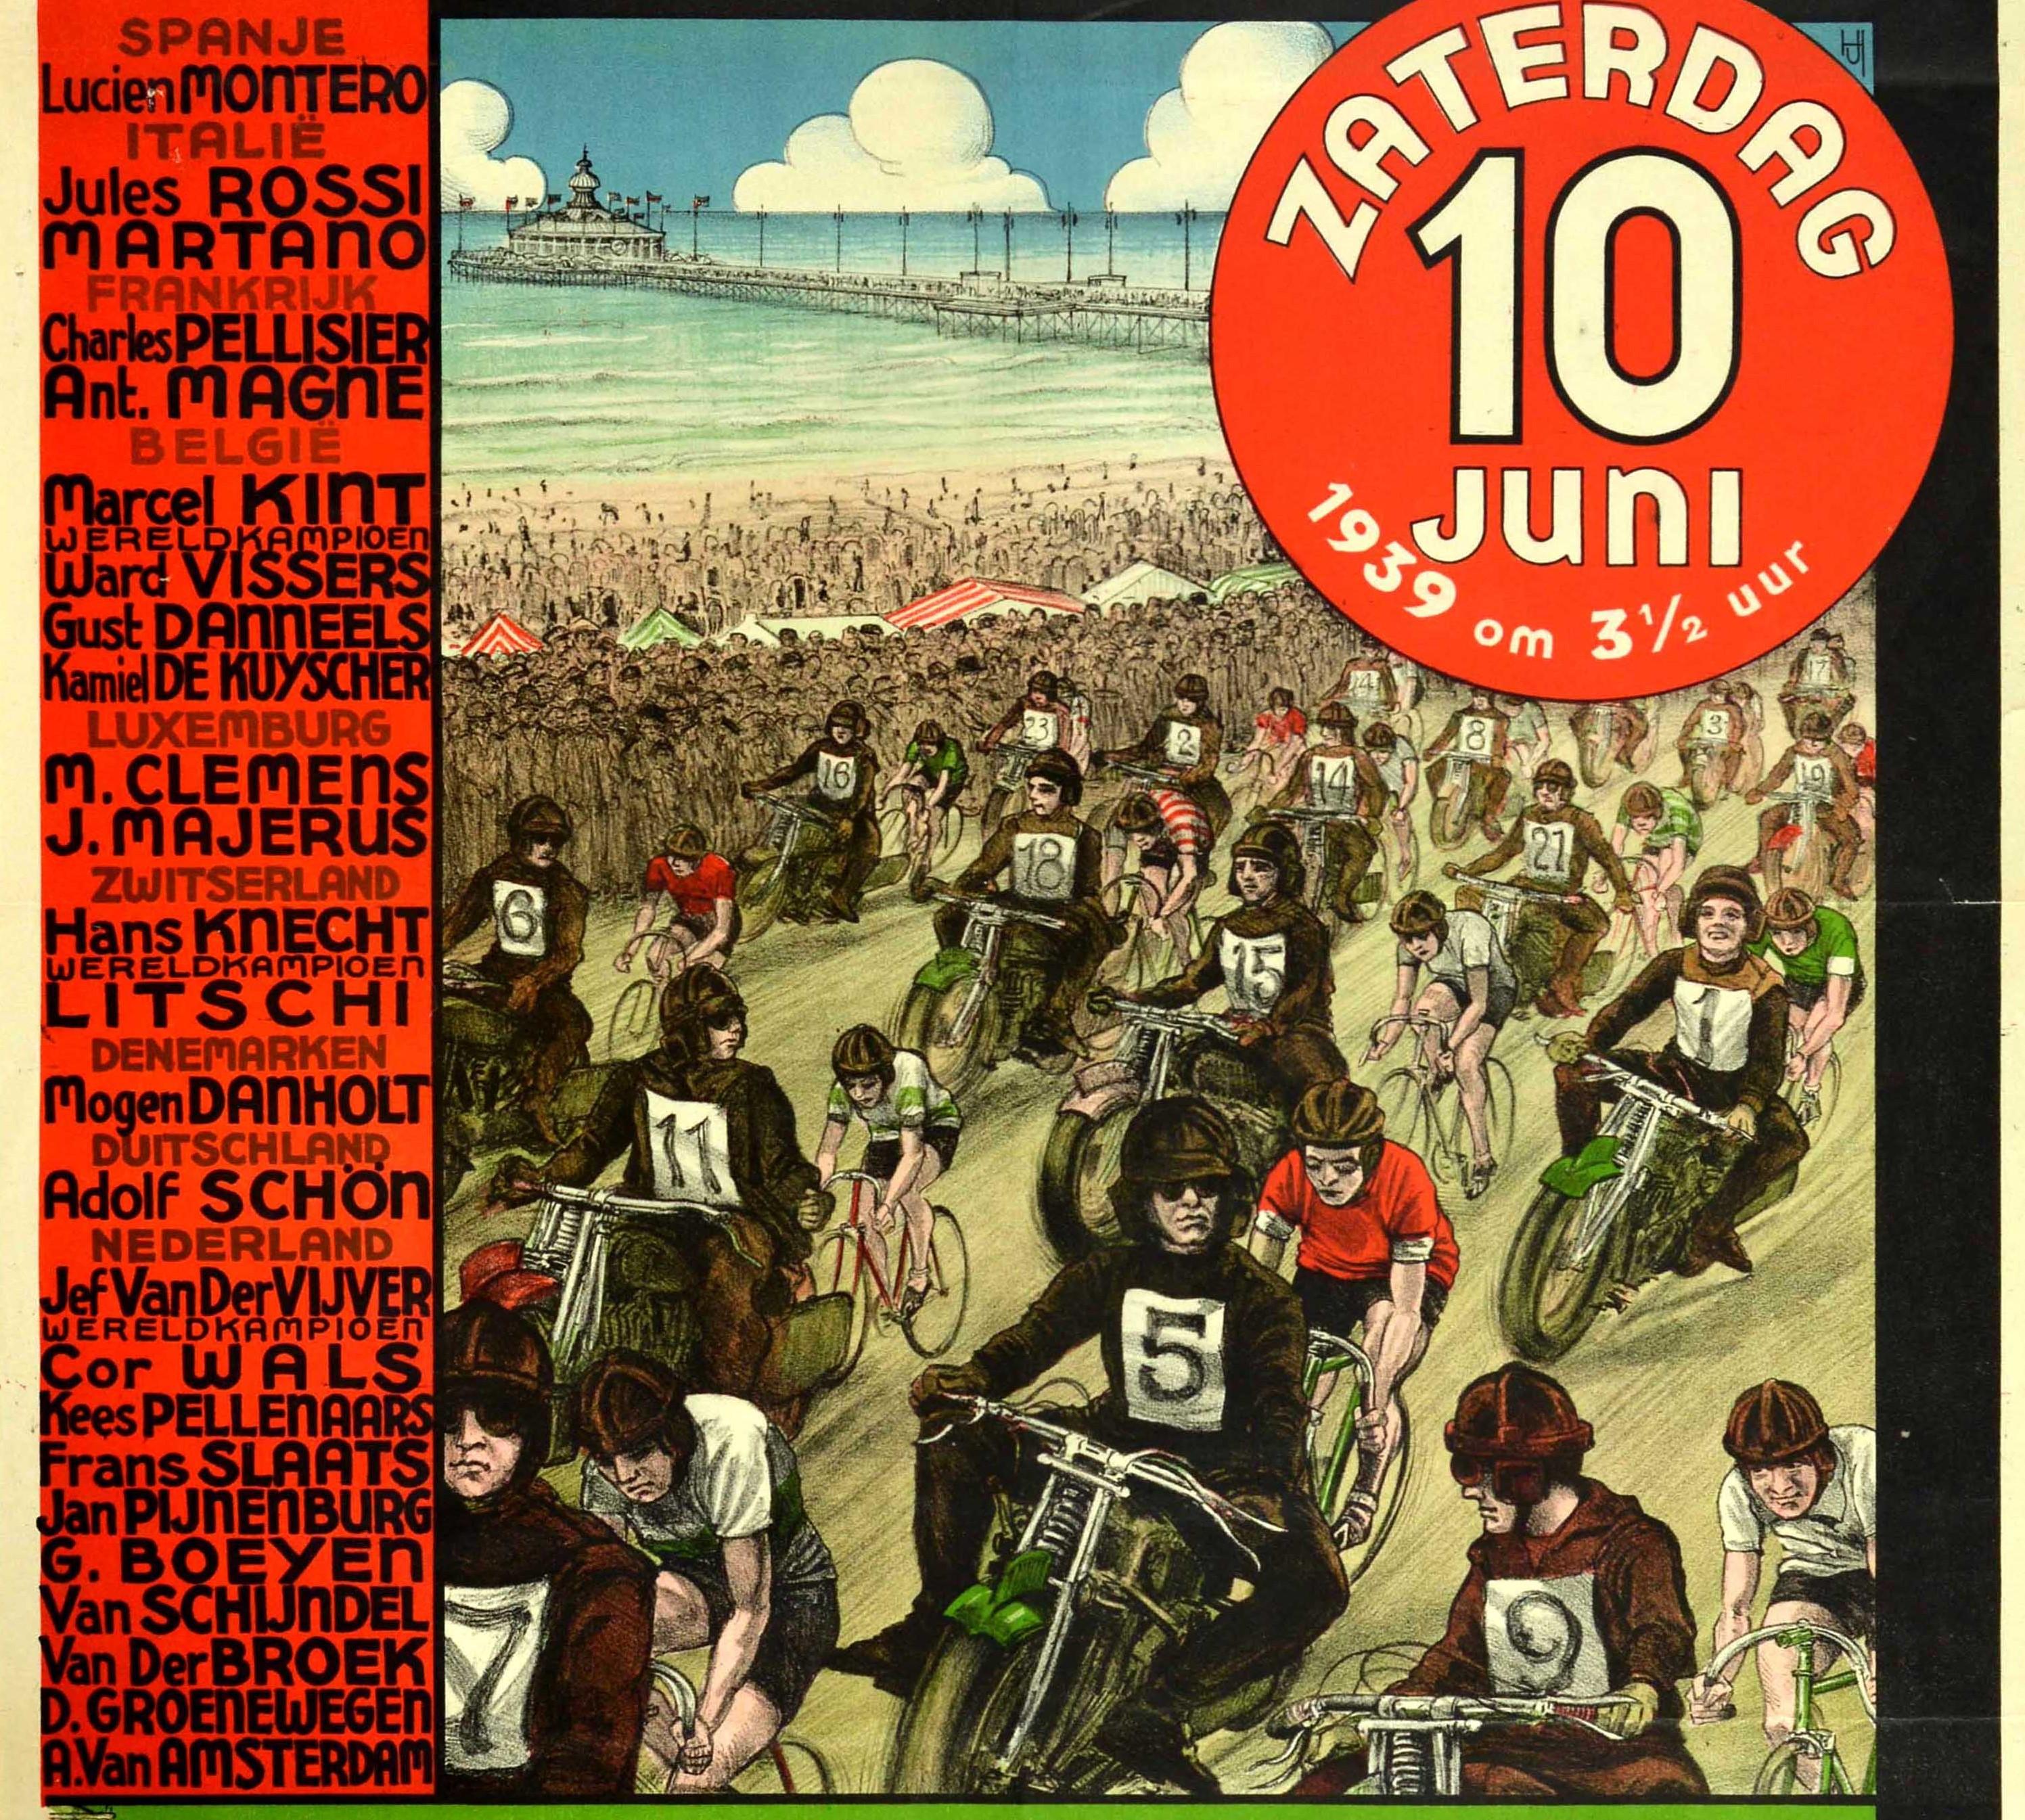 Original-GP-Motorsport-Werbeplakat für das Internationale Weltkriterium um den Großen Preis von Scheveningen, das am 10. Juli 1939 in den Niederlanden stattfand - Internationaal Wereldcriterium Om Den Grooten Prijs Van Scheveningen - mit einer